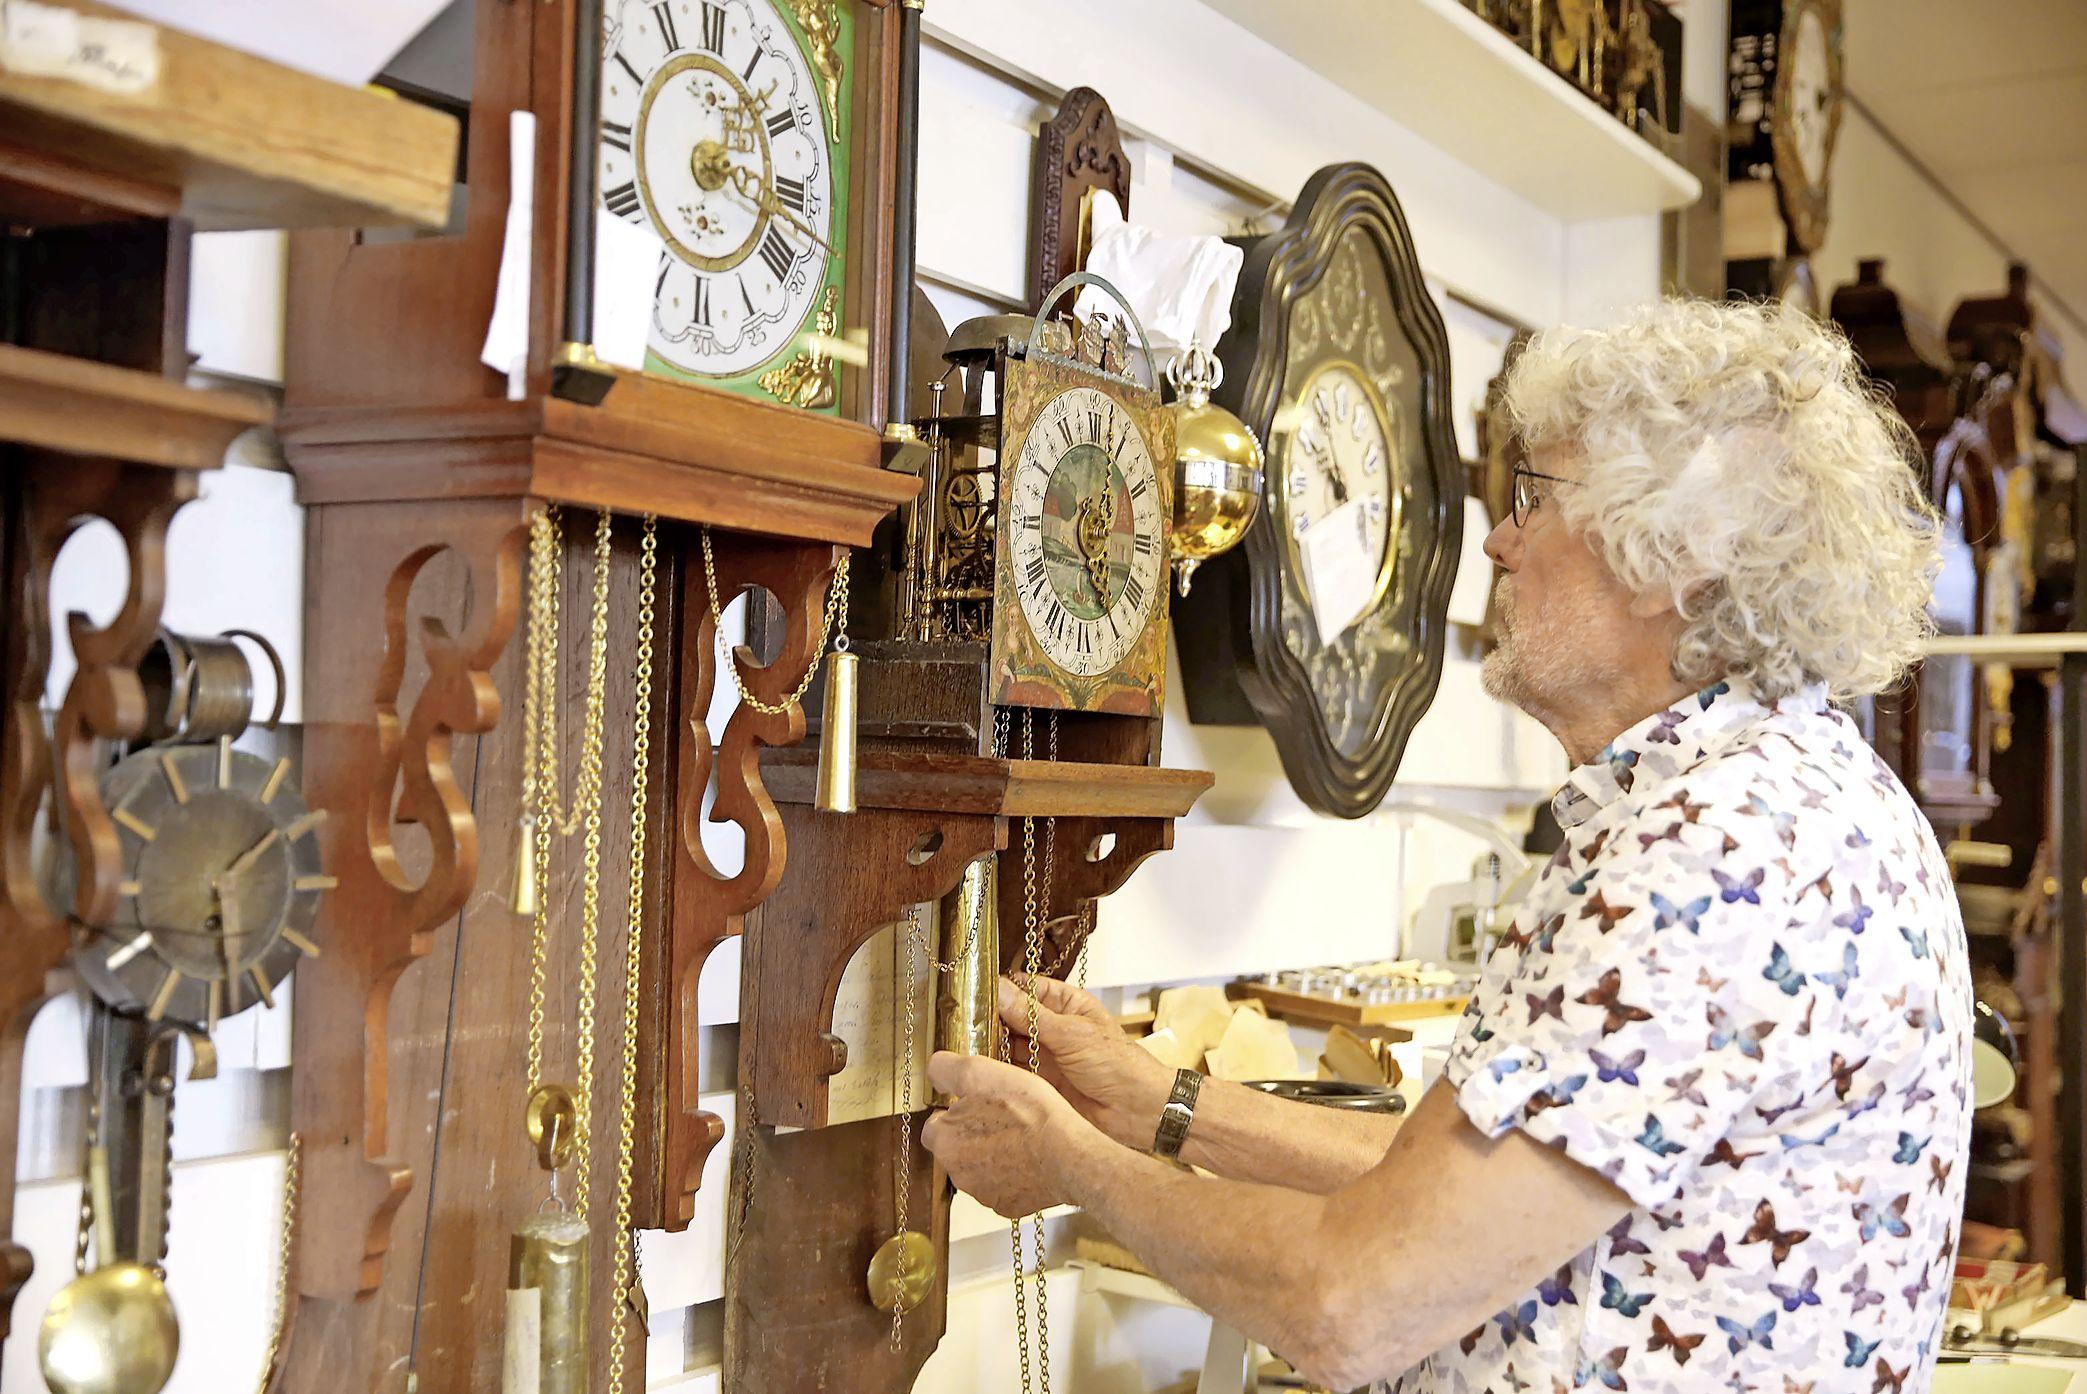 Vijftig jaar al, brengt Henk Houkes (71) historische klokken weer tot leven. Of hij niet eens met pensioen moet? Ben je gek foto